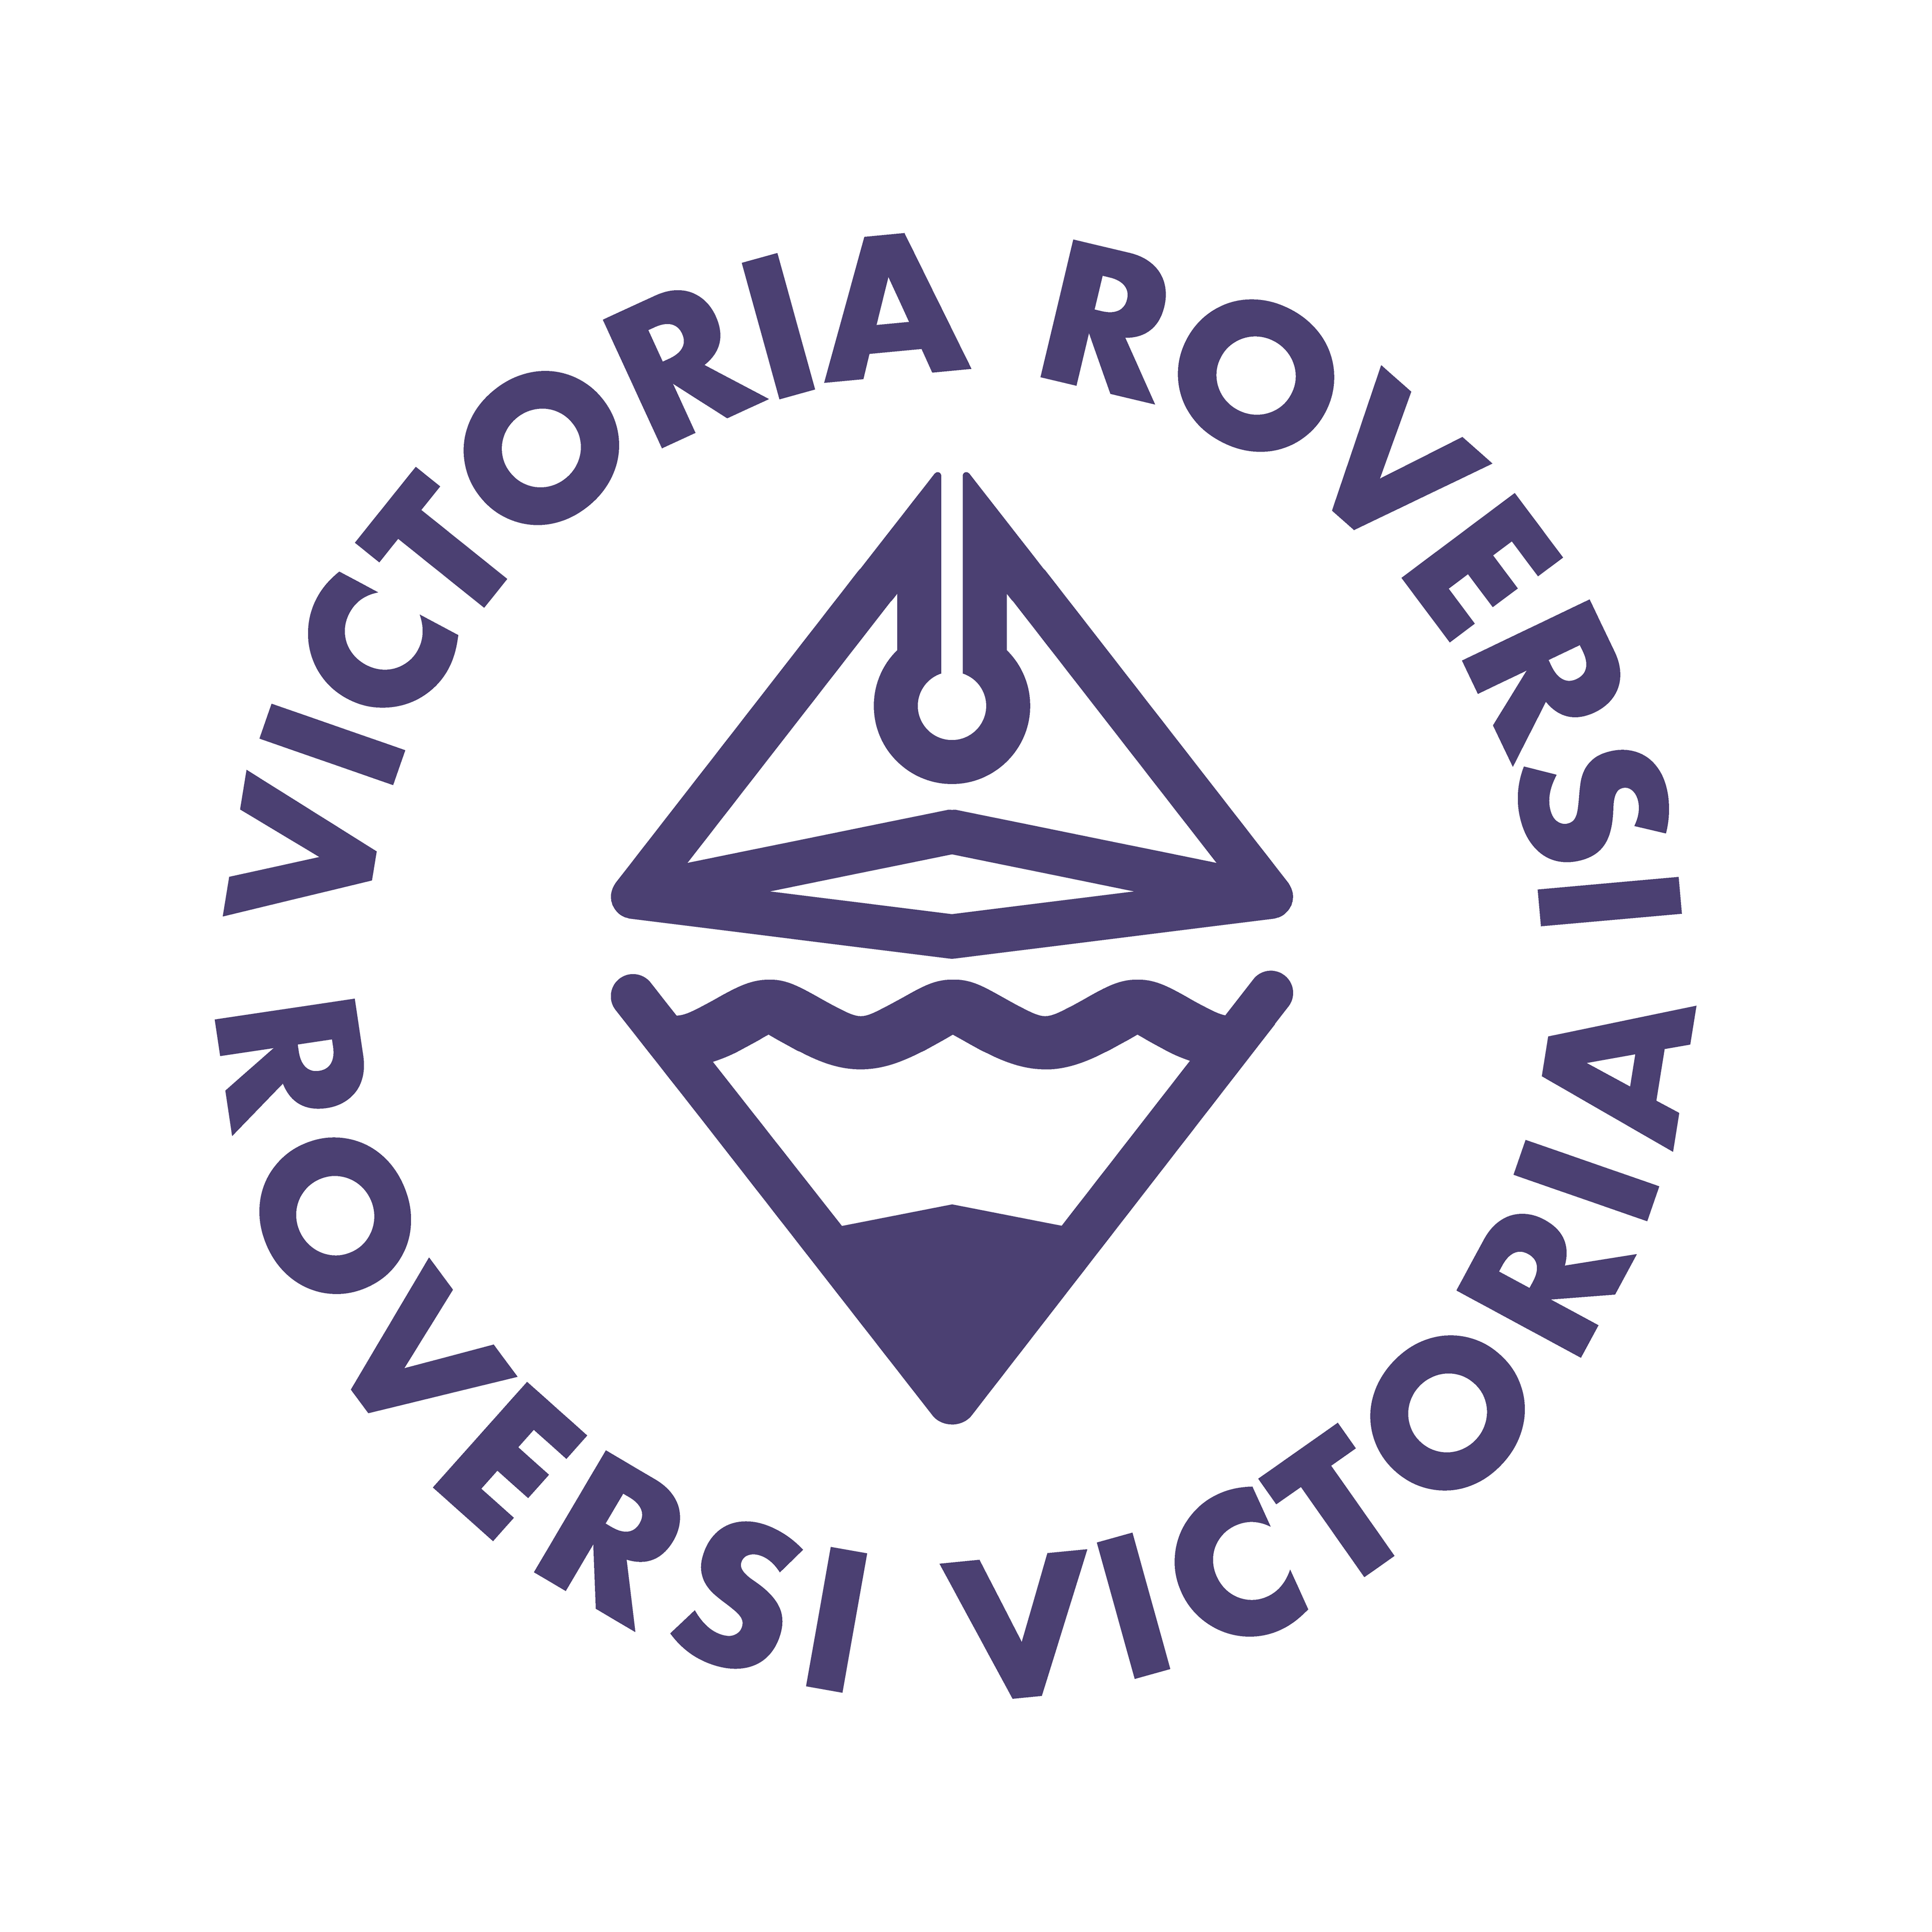 Victoria Roversi